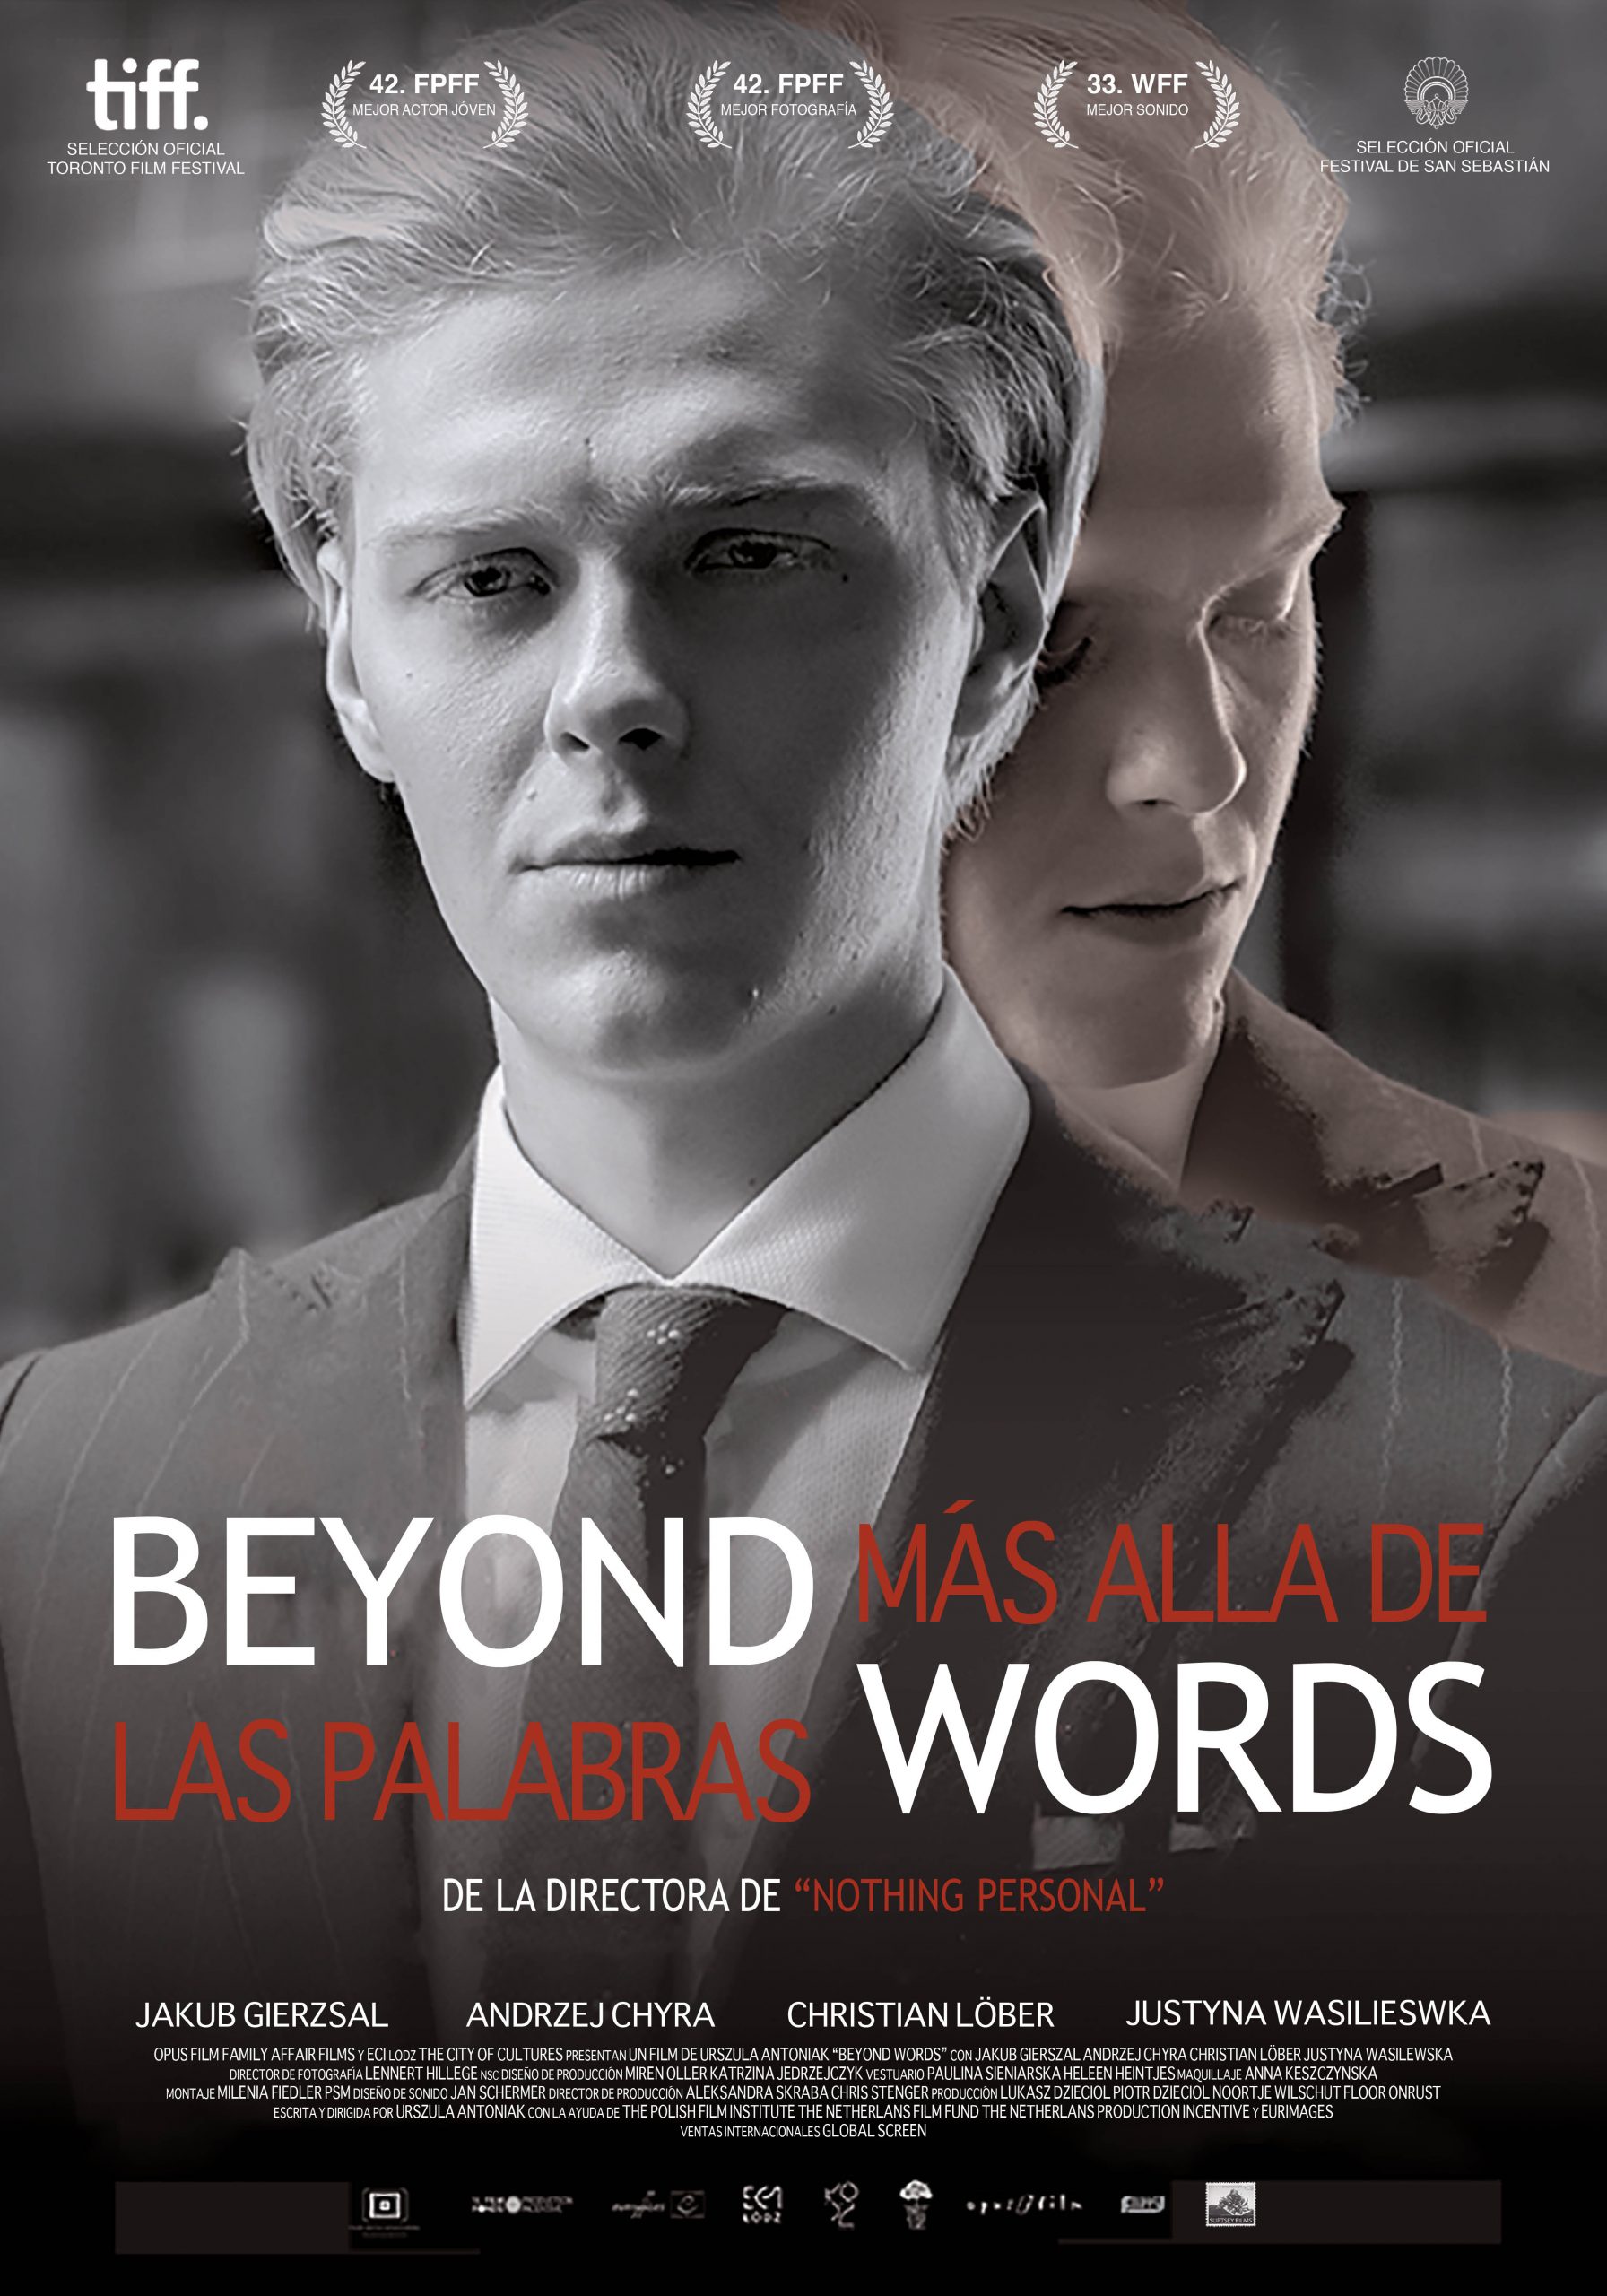 Más allá de las palabras (Beyond words)